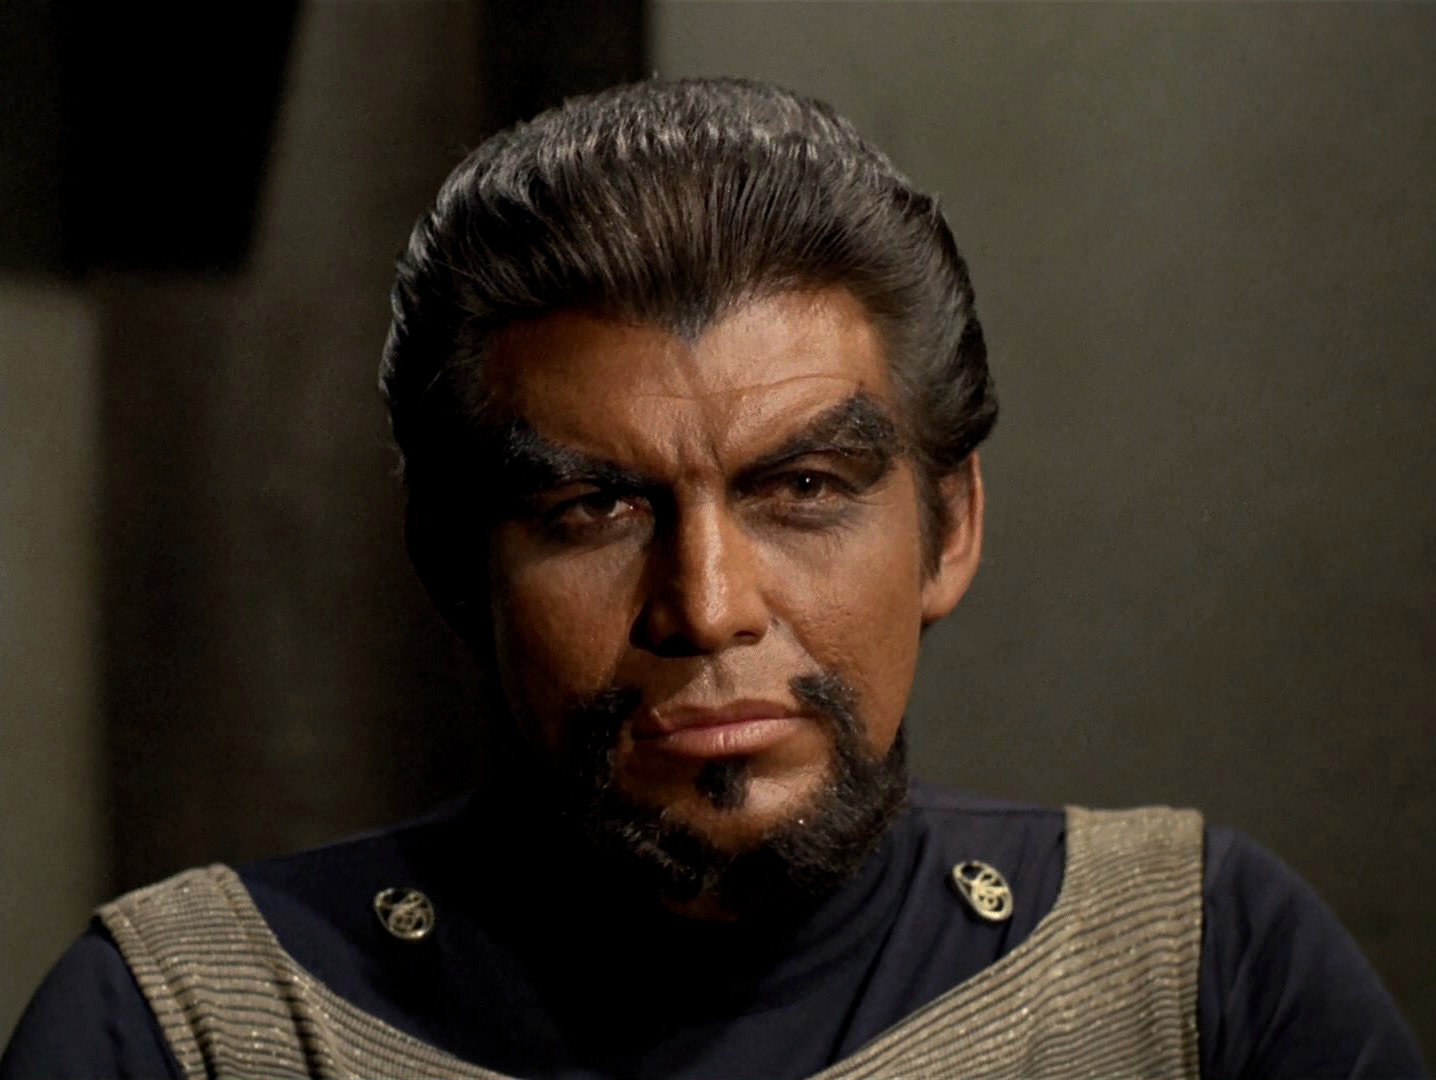 klingon-krell-flat-aprivatelittlewar.jpg